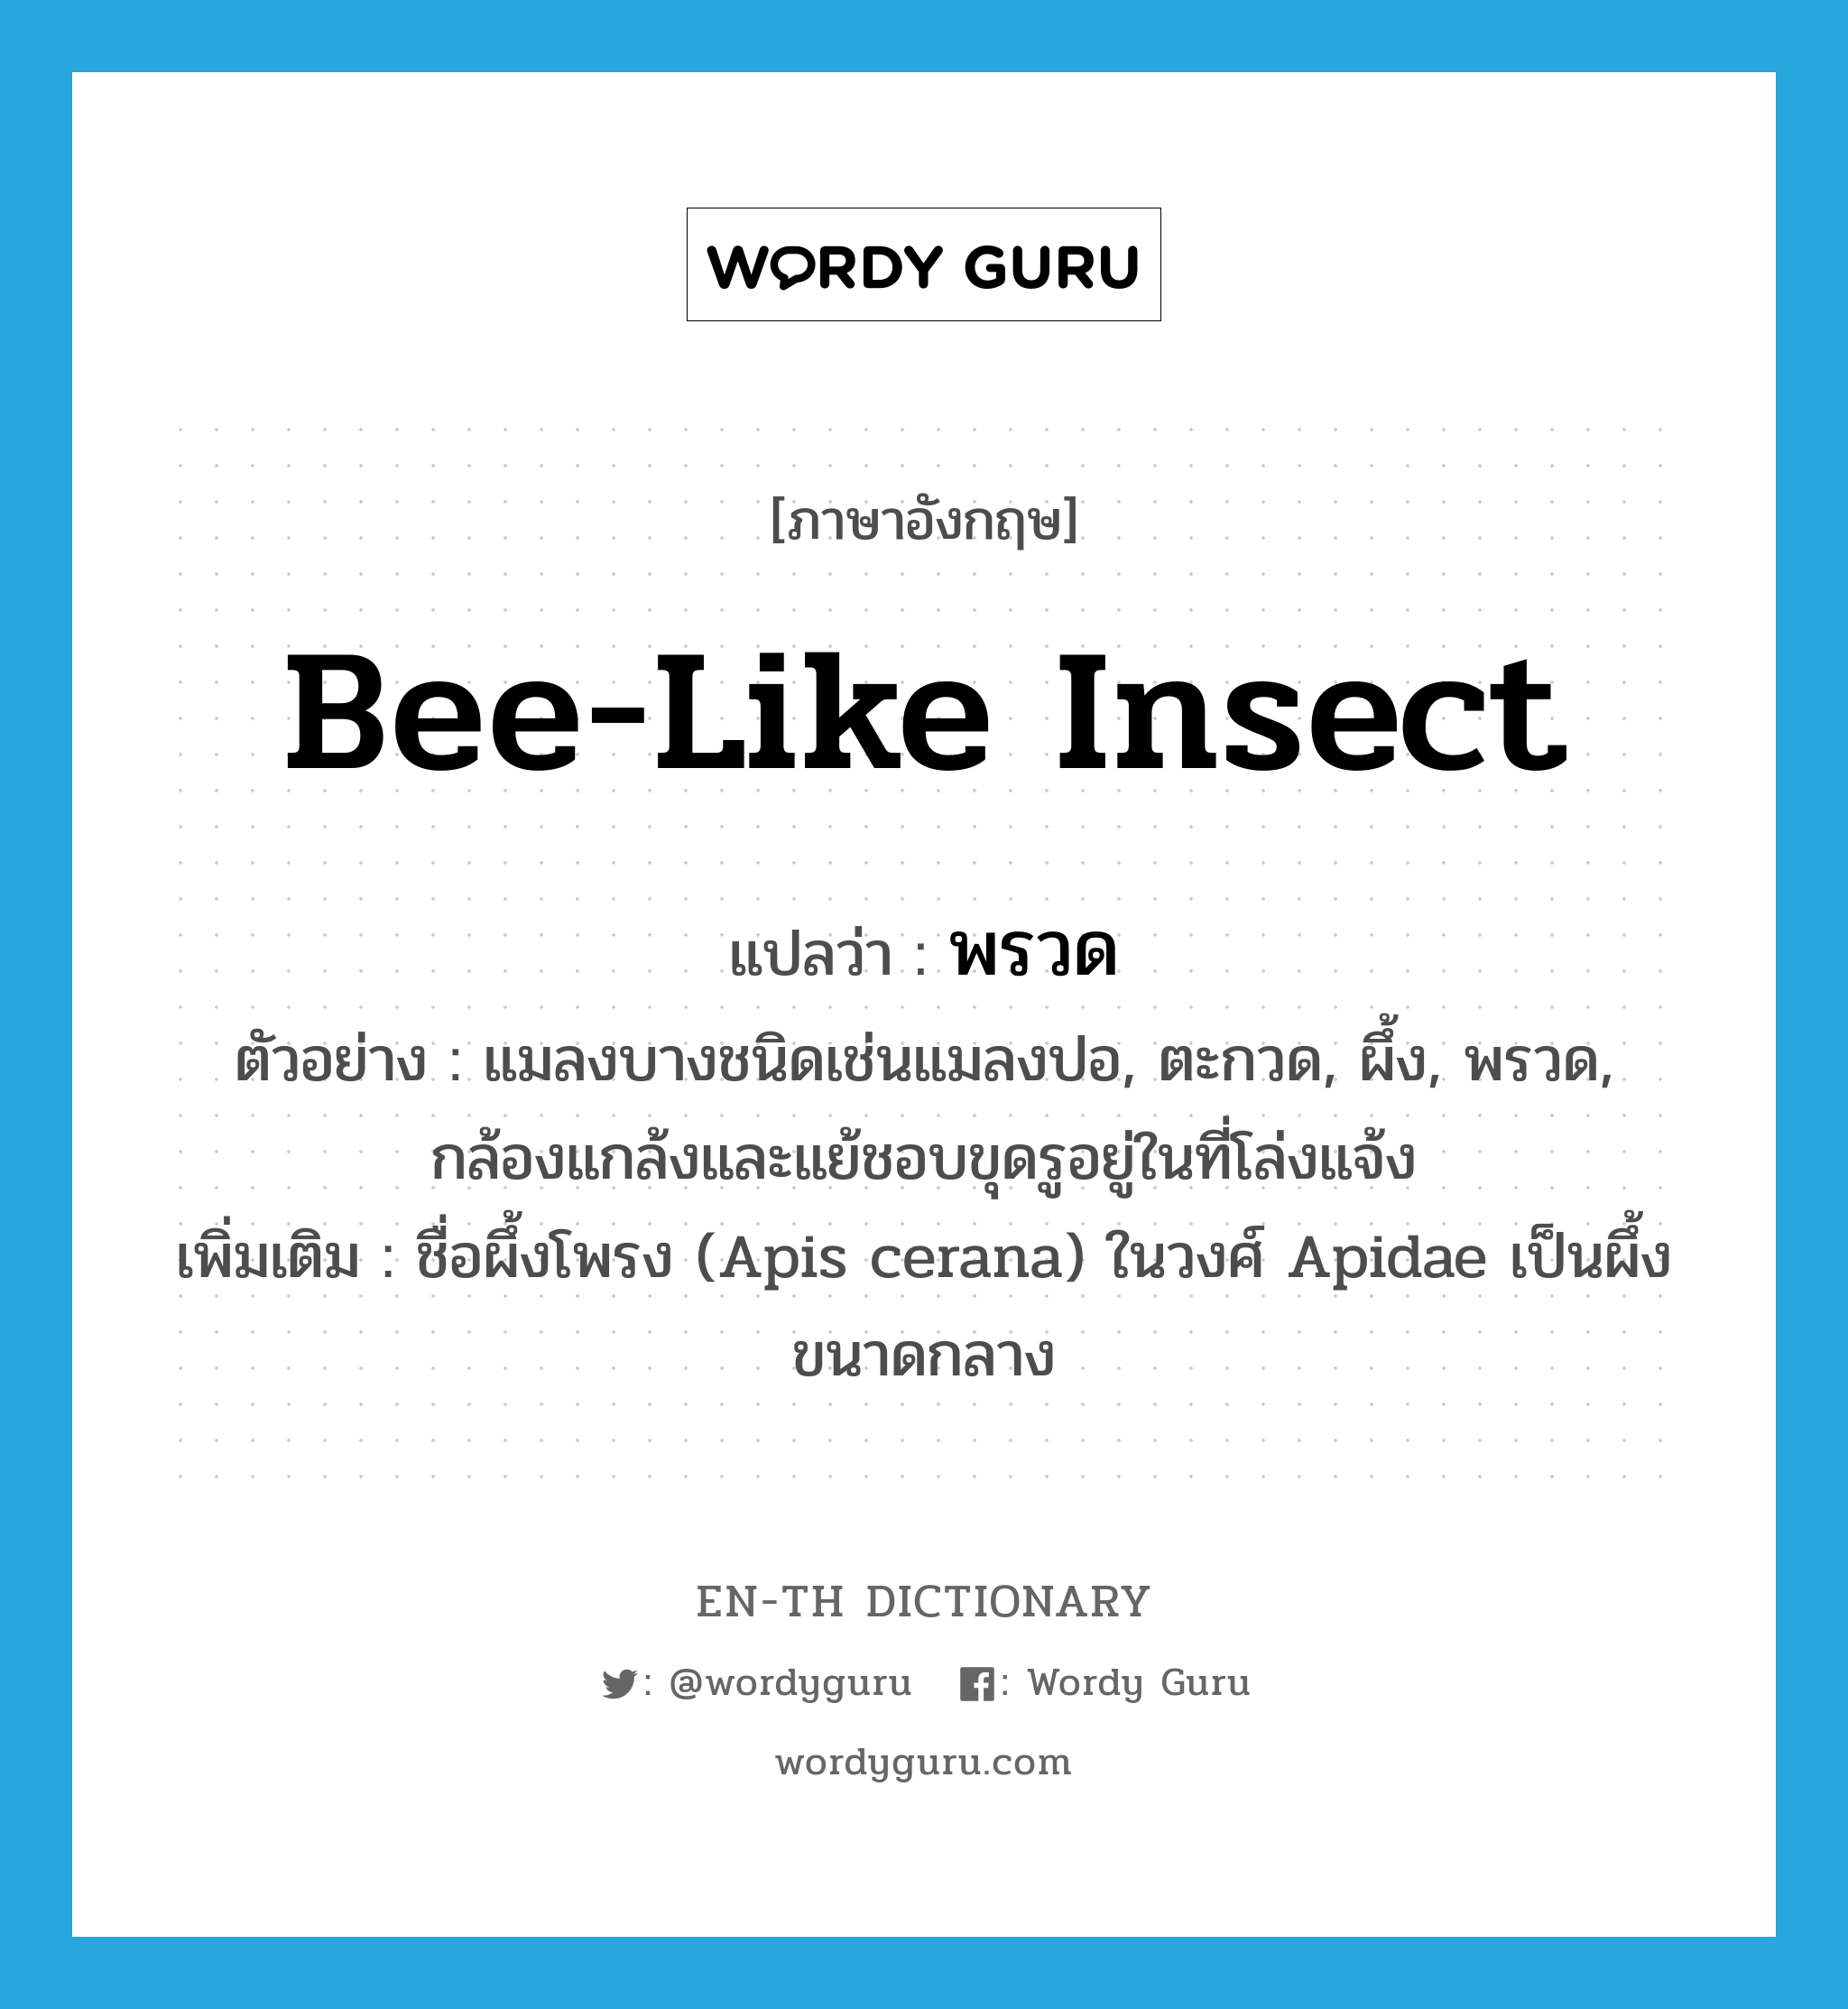 พรวด ภาษาอังกฤษ?, คำศัพท์ภาษาอังกฤษ พรวด แปลว่า bee-like insect ประเภท N ตัวอย่าง แมลงบางชนิดเช่นแมลงปอ, ตะกวด, ผึ้ง, พรวด, กล้องแกล้งและแย้ชอบขุดรูอยู่ในที่โล่งแจ้ง เพิ่มเติม ชื่อผึ้งโพรง (Apis cerana) ในวงศ์ Apidae เป็นผึ้งขนาดกลาง หมวด N